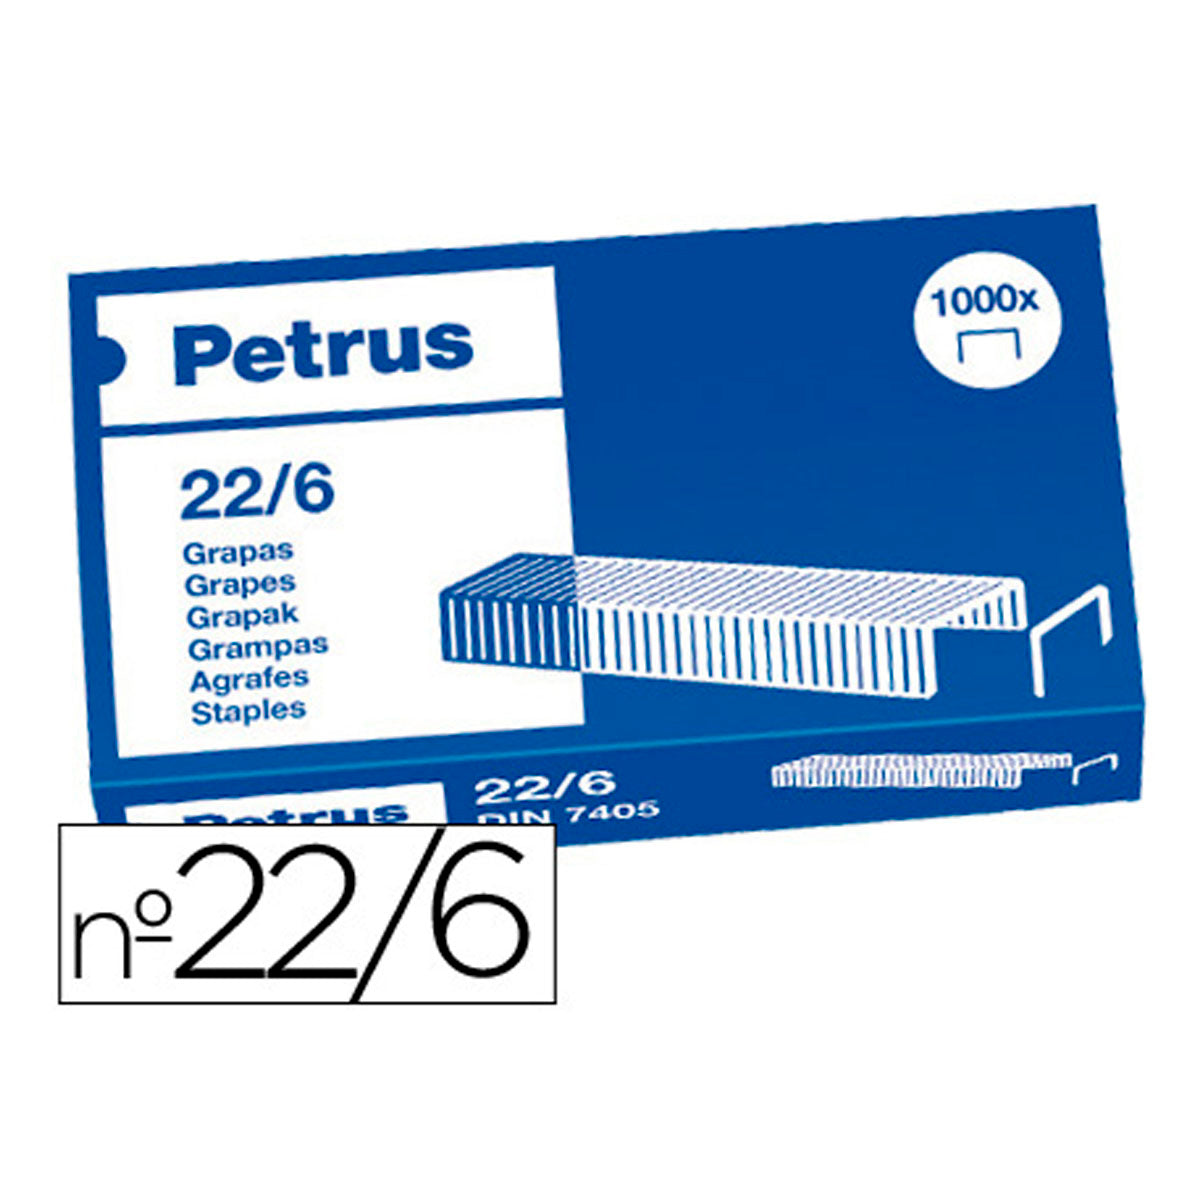 PETRUS - Grapas nº22/6 Cobreadas Caja de 1000 Unidades